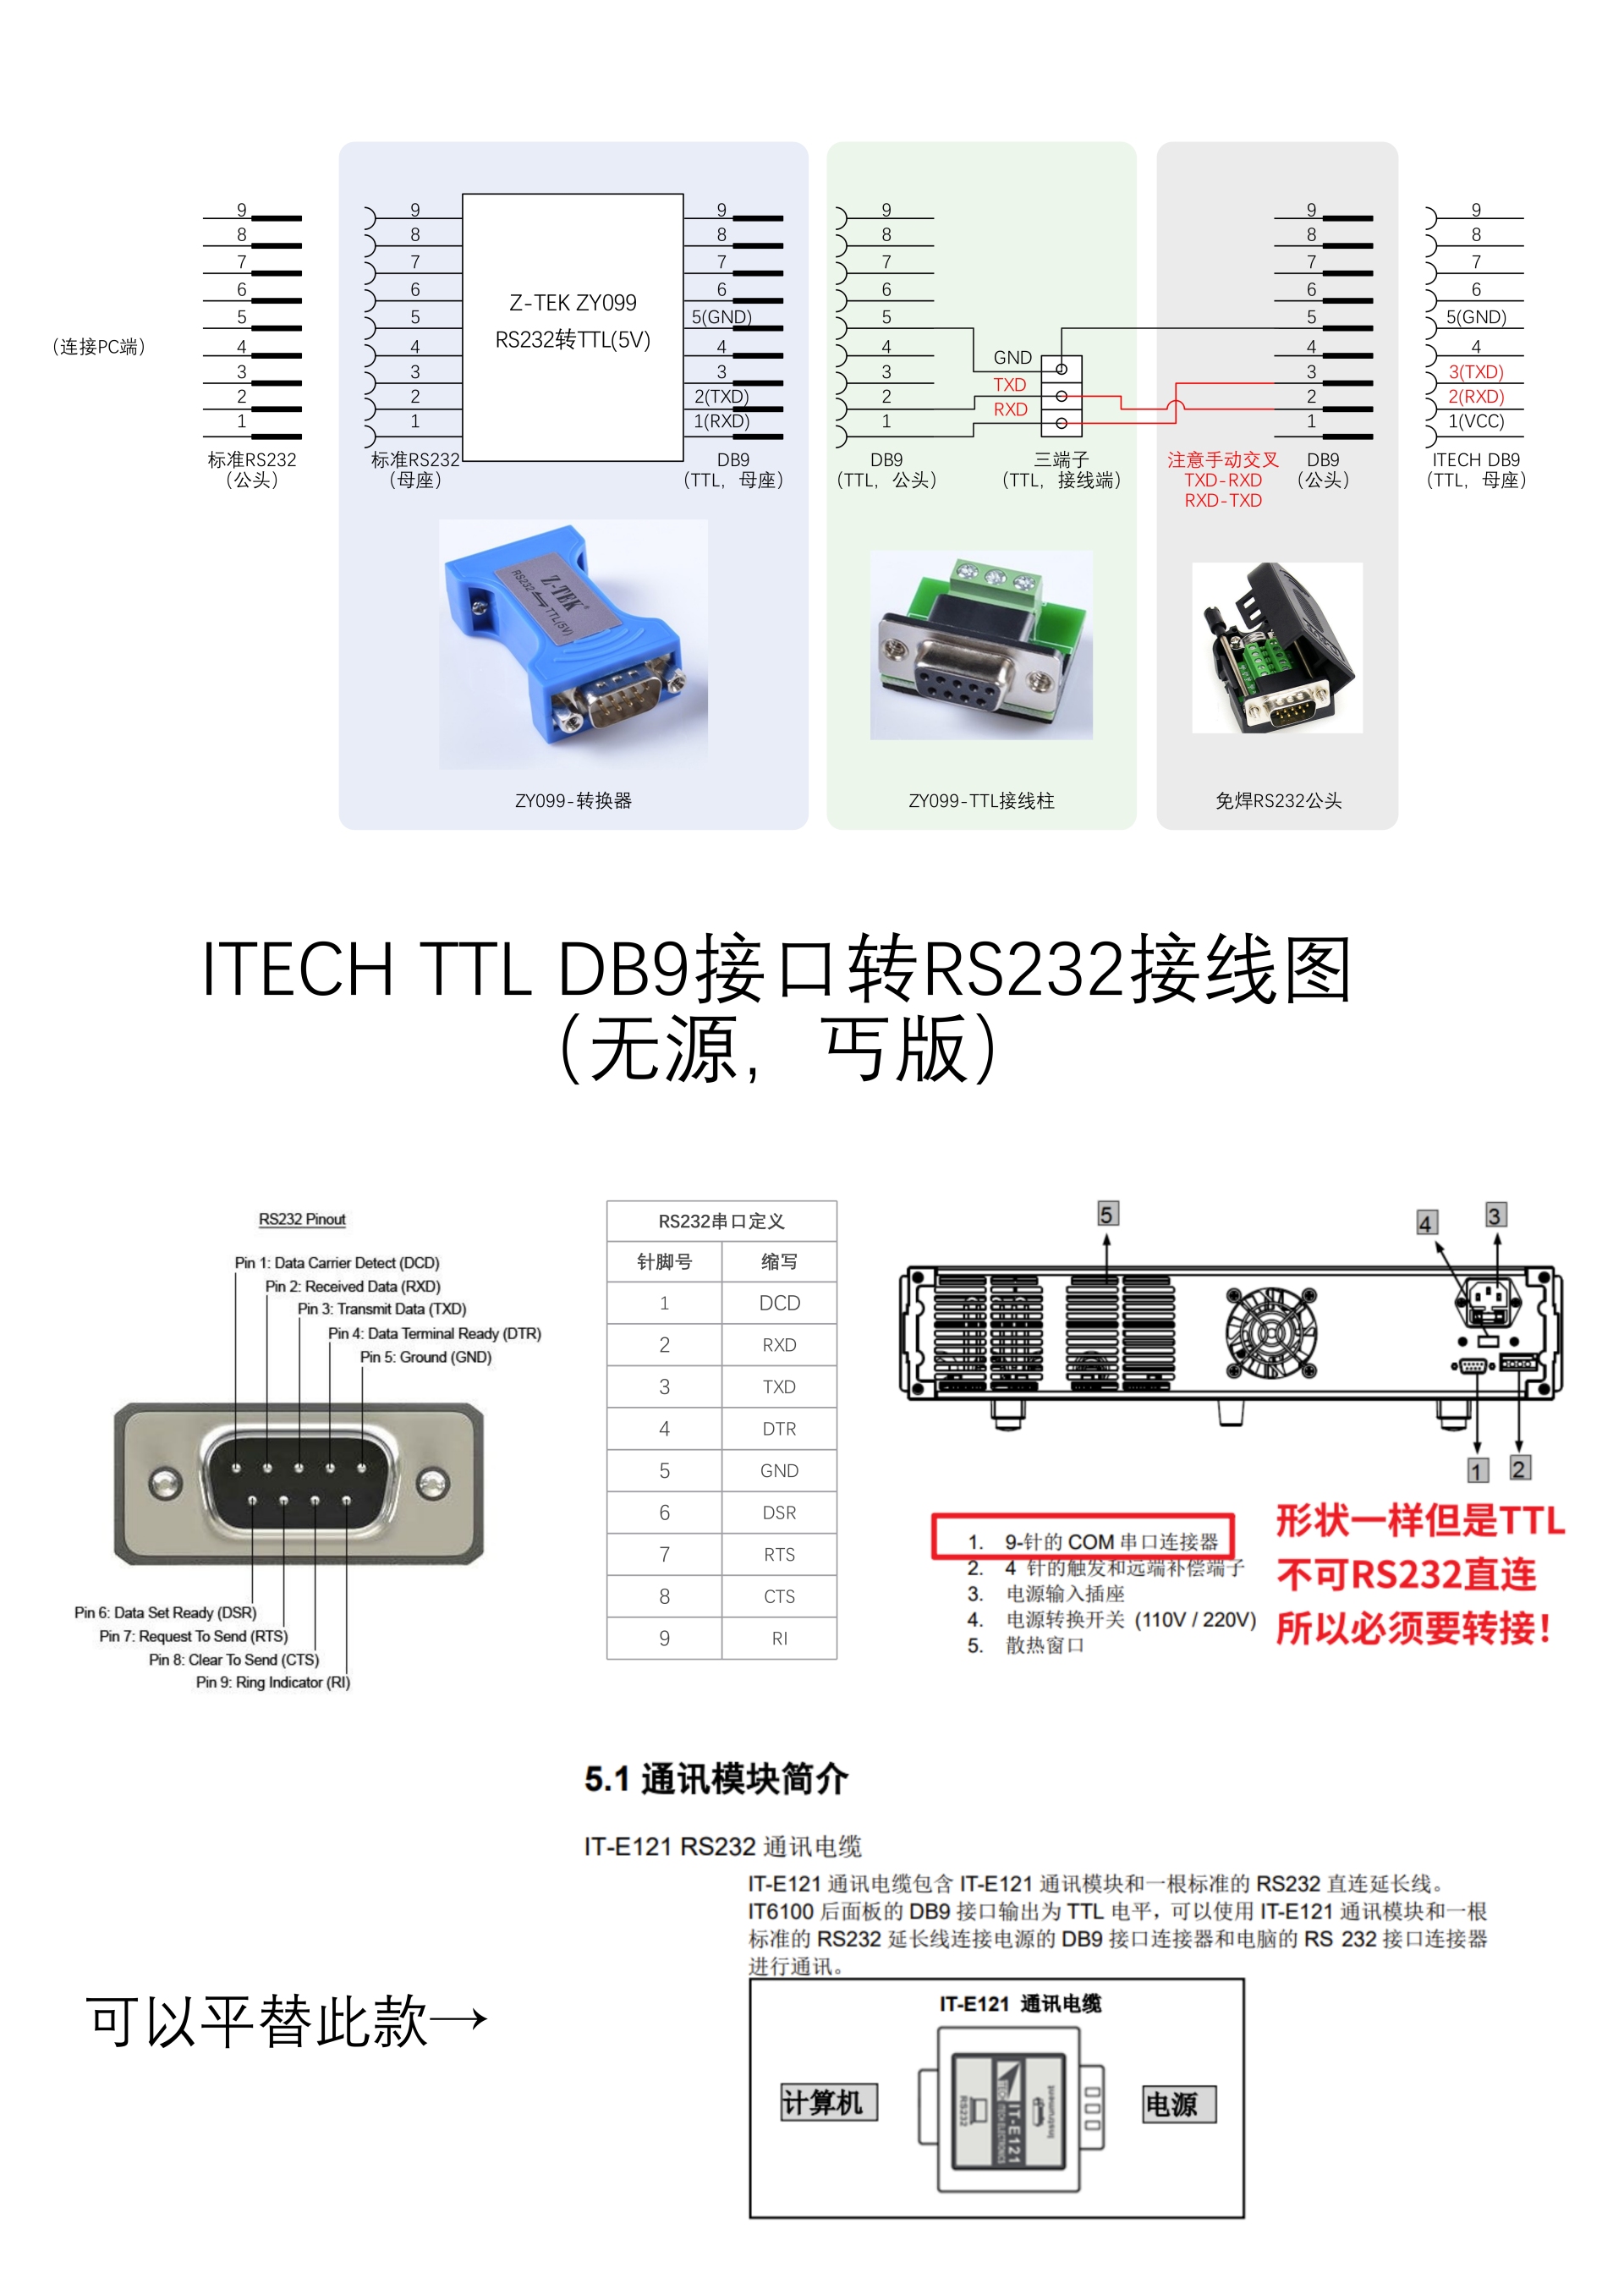 ITECH-TTL转RS232.jpg